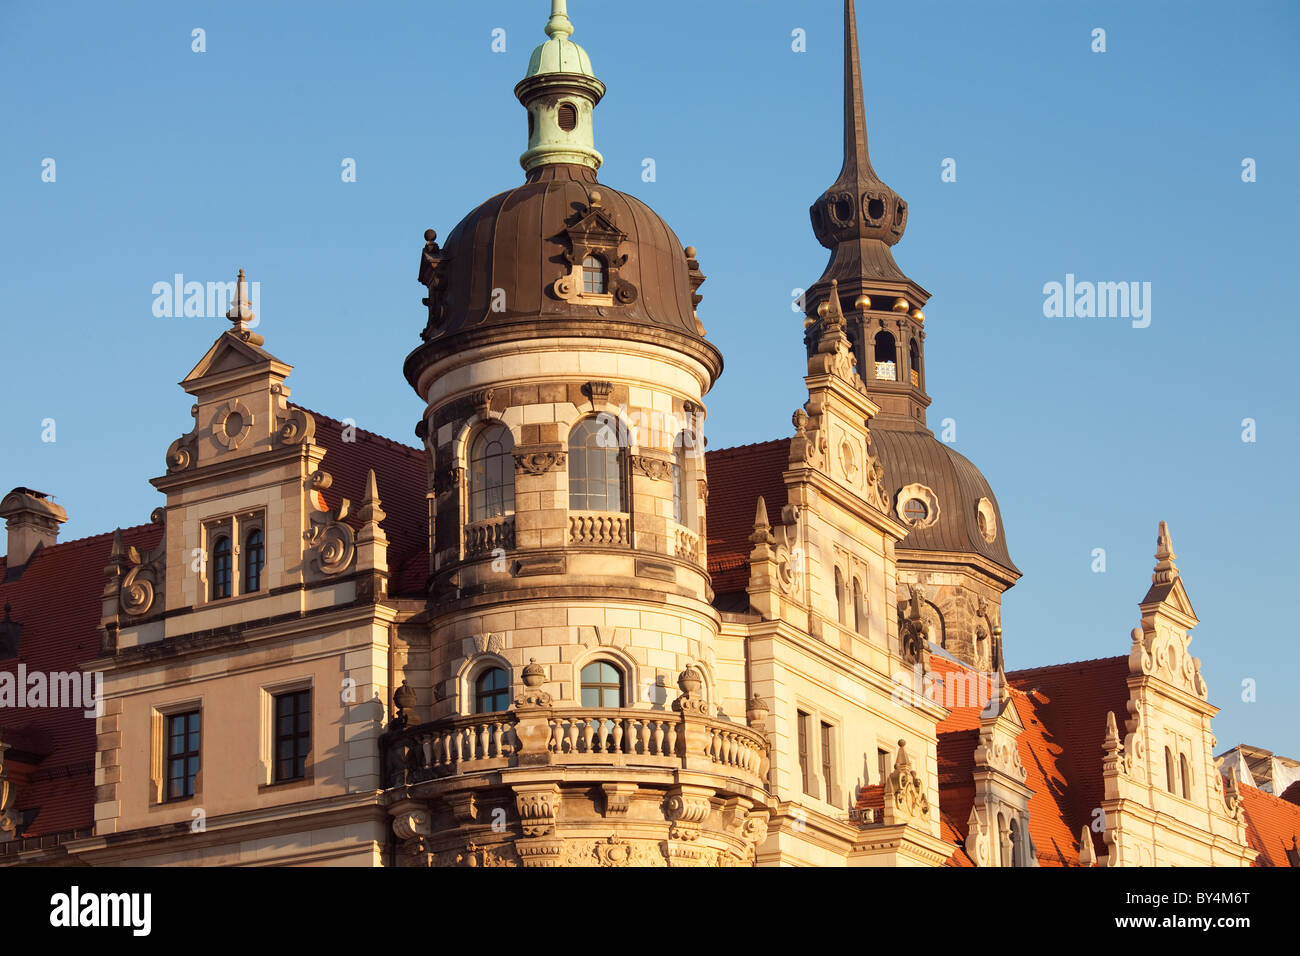 Deutschland, Sachsen, Dresden, Fassade des königlichen Palastes ist im Neorenaissance-Stil dekoriert. Stockfoto